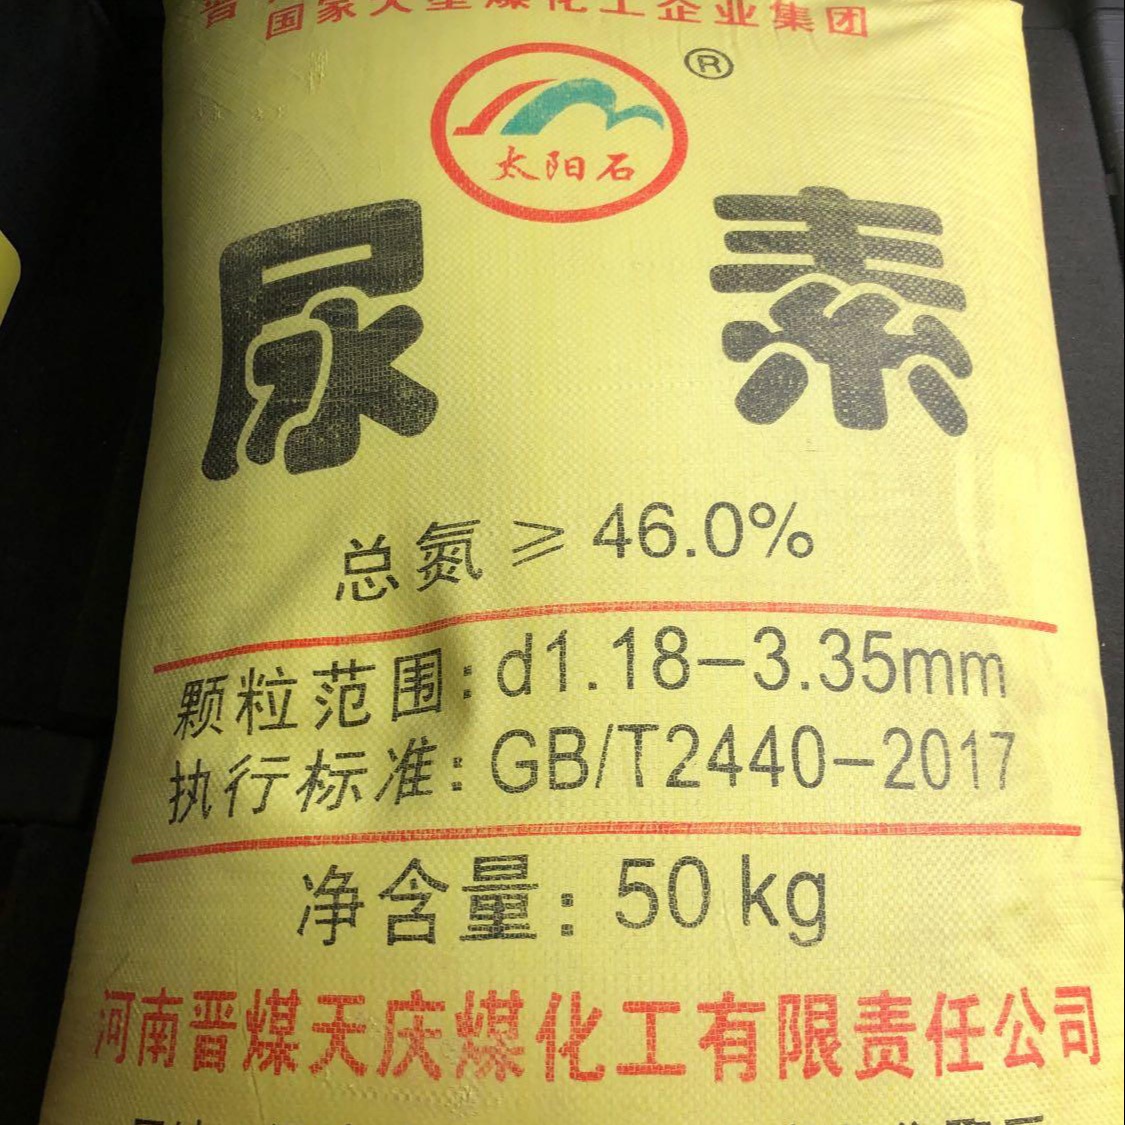 河南郑州现货供应颗粒尿素工业级碳酰胺颗粒尿素农用级碳酰胺